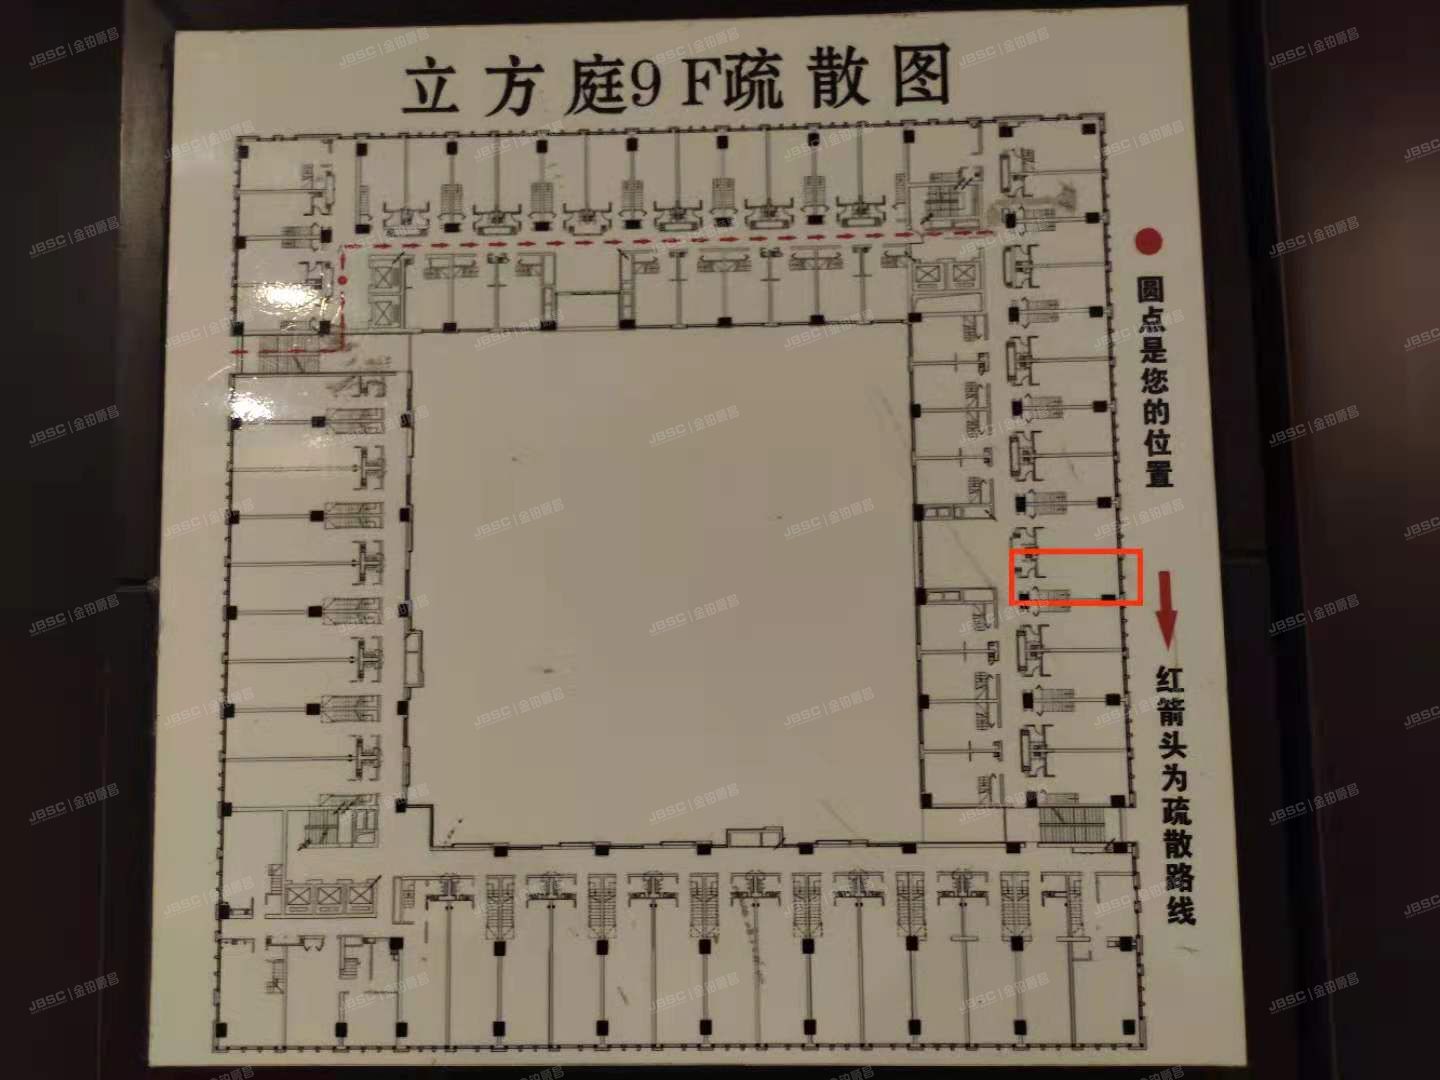 海淀区 善缘街1号9层1-916（立方庭）公寓式酒店 loft